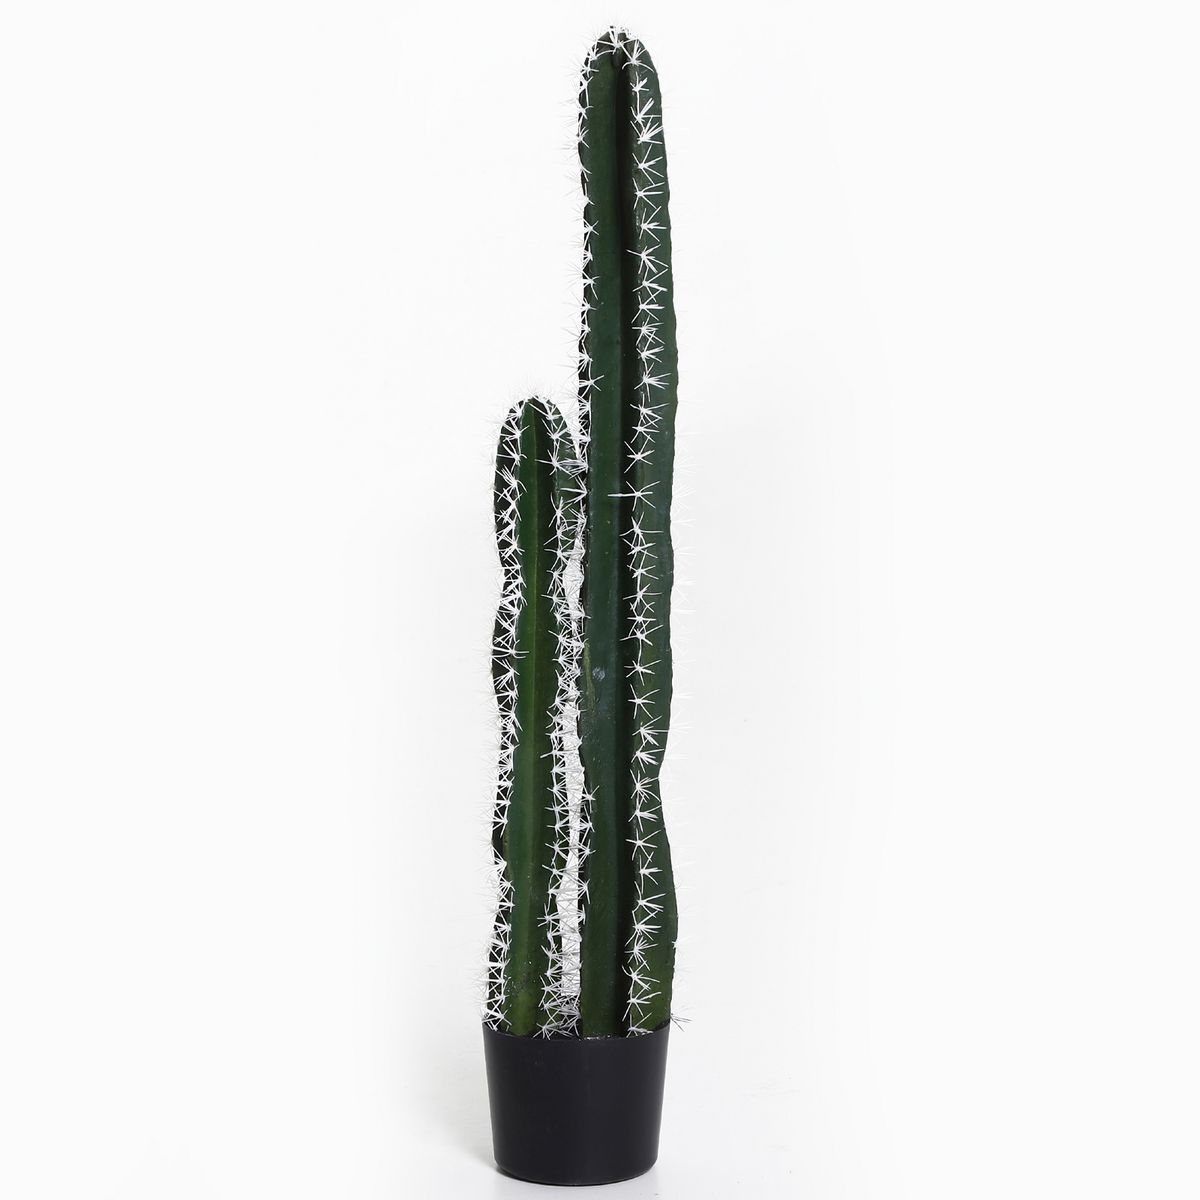 OUTSUNNY Cactus artificiel grand réalisme plante artificielle grande taille  dim. Ø 14 x 100H cm vert pas cher à prix Auchan